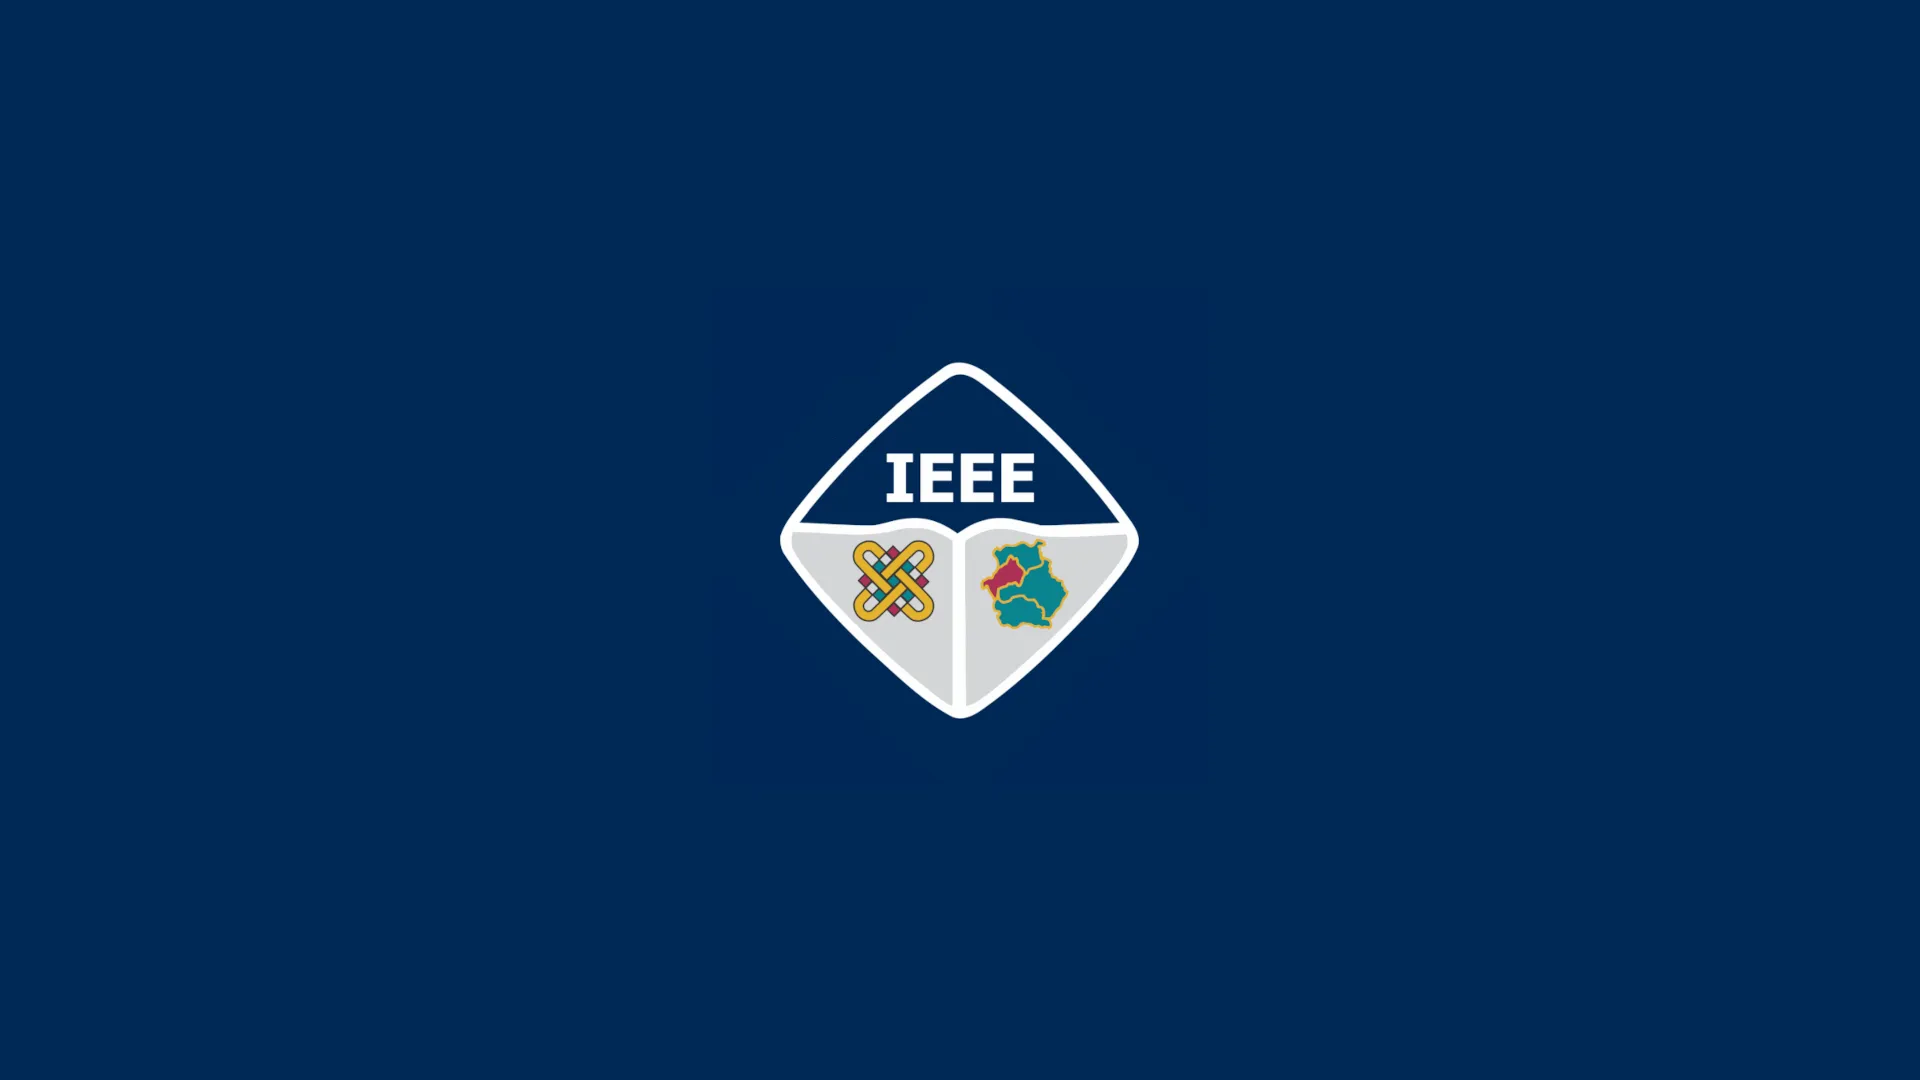 The IEEE SB of Kastoria logo